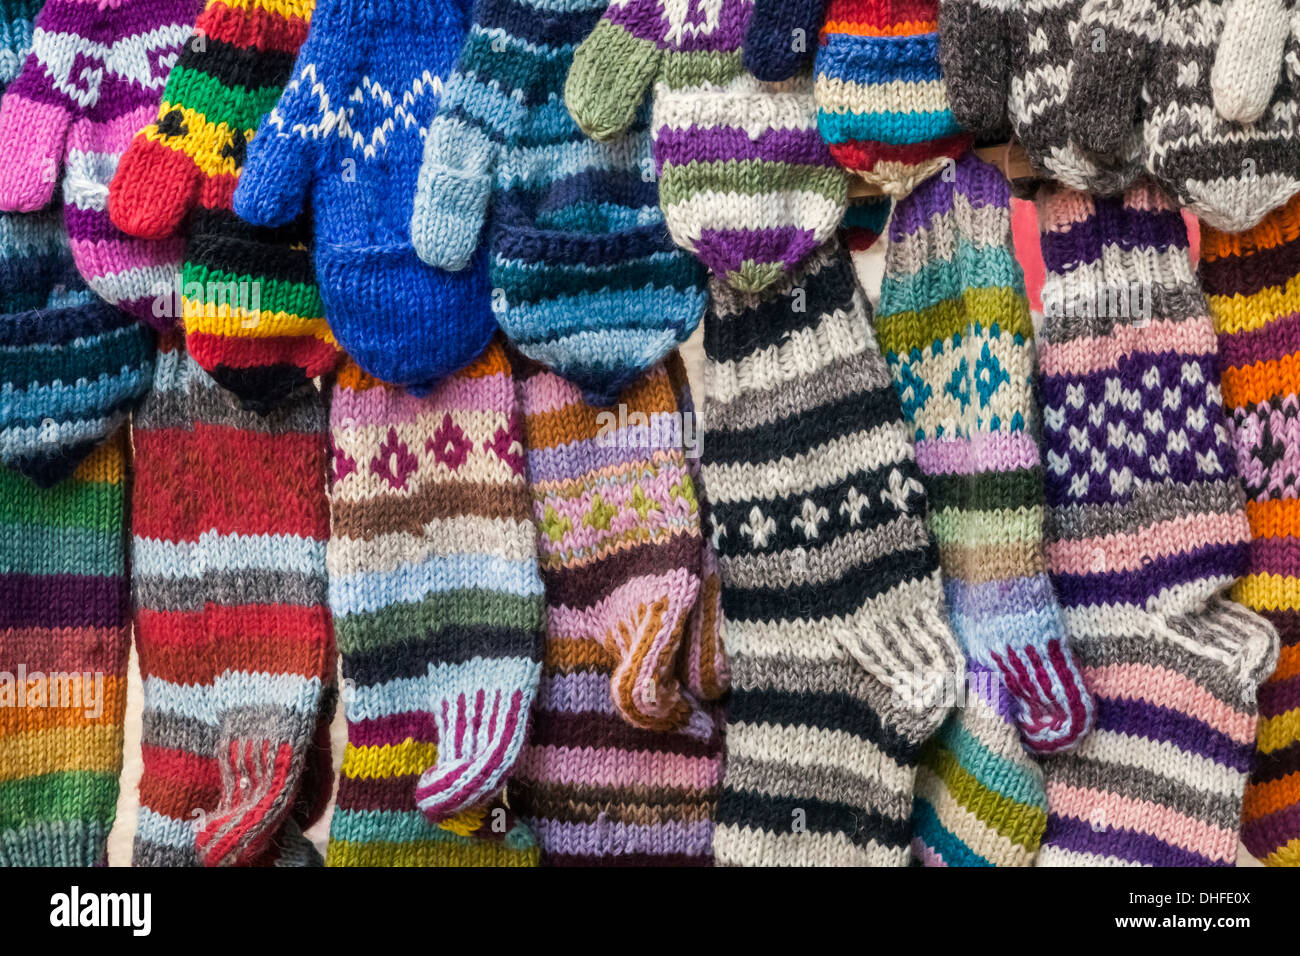 Nepal, Bhaktapur, gestrickte wollene Handschuhe und Socken Stockfotografie  - Alamy